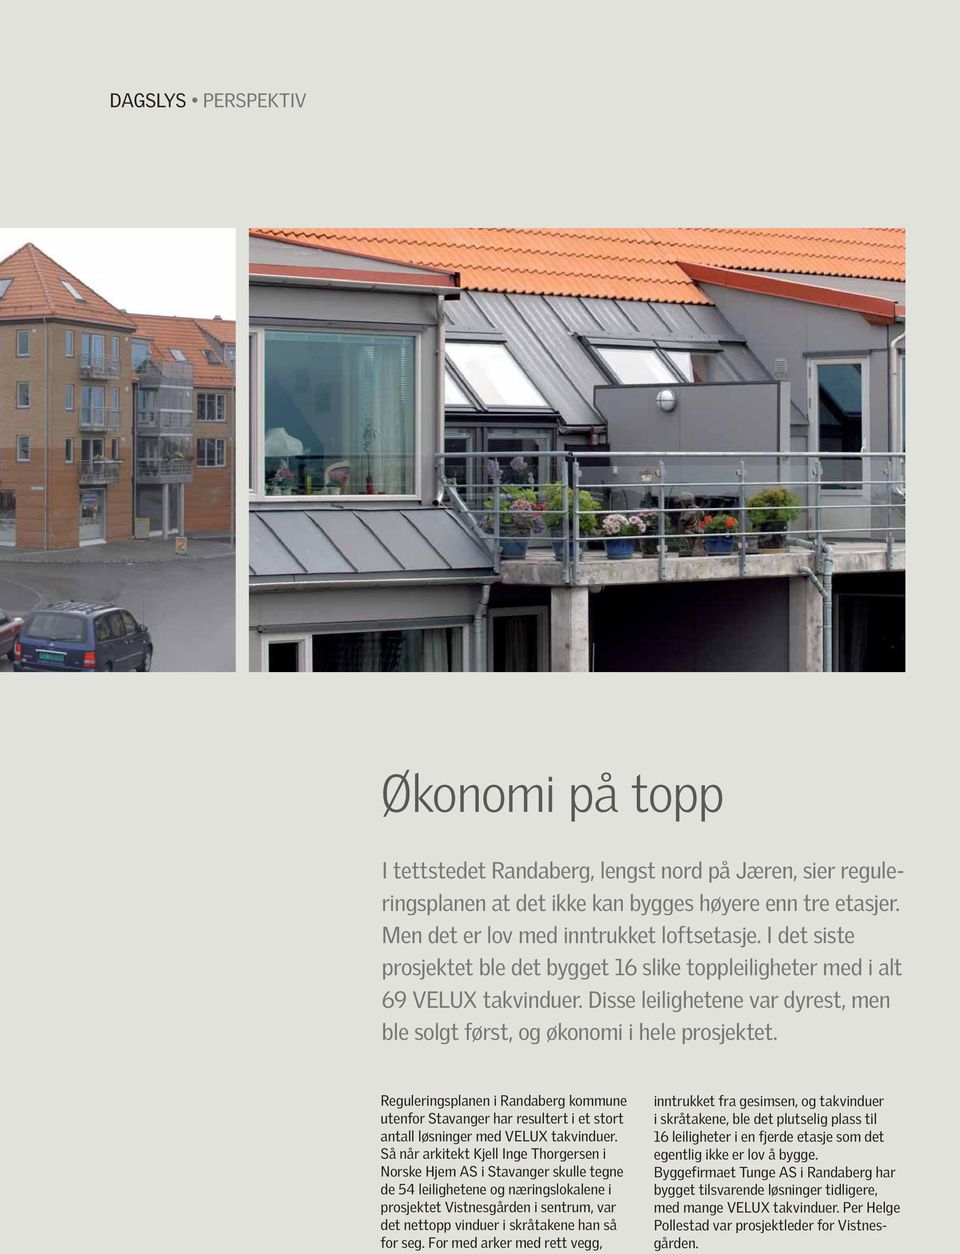 Reguleringsplanen i Randaberg kommune utenfor Stavanger har resultert i et stort antall løsninger med VELUX takvinduer.